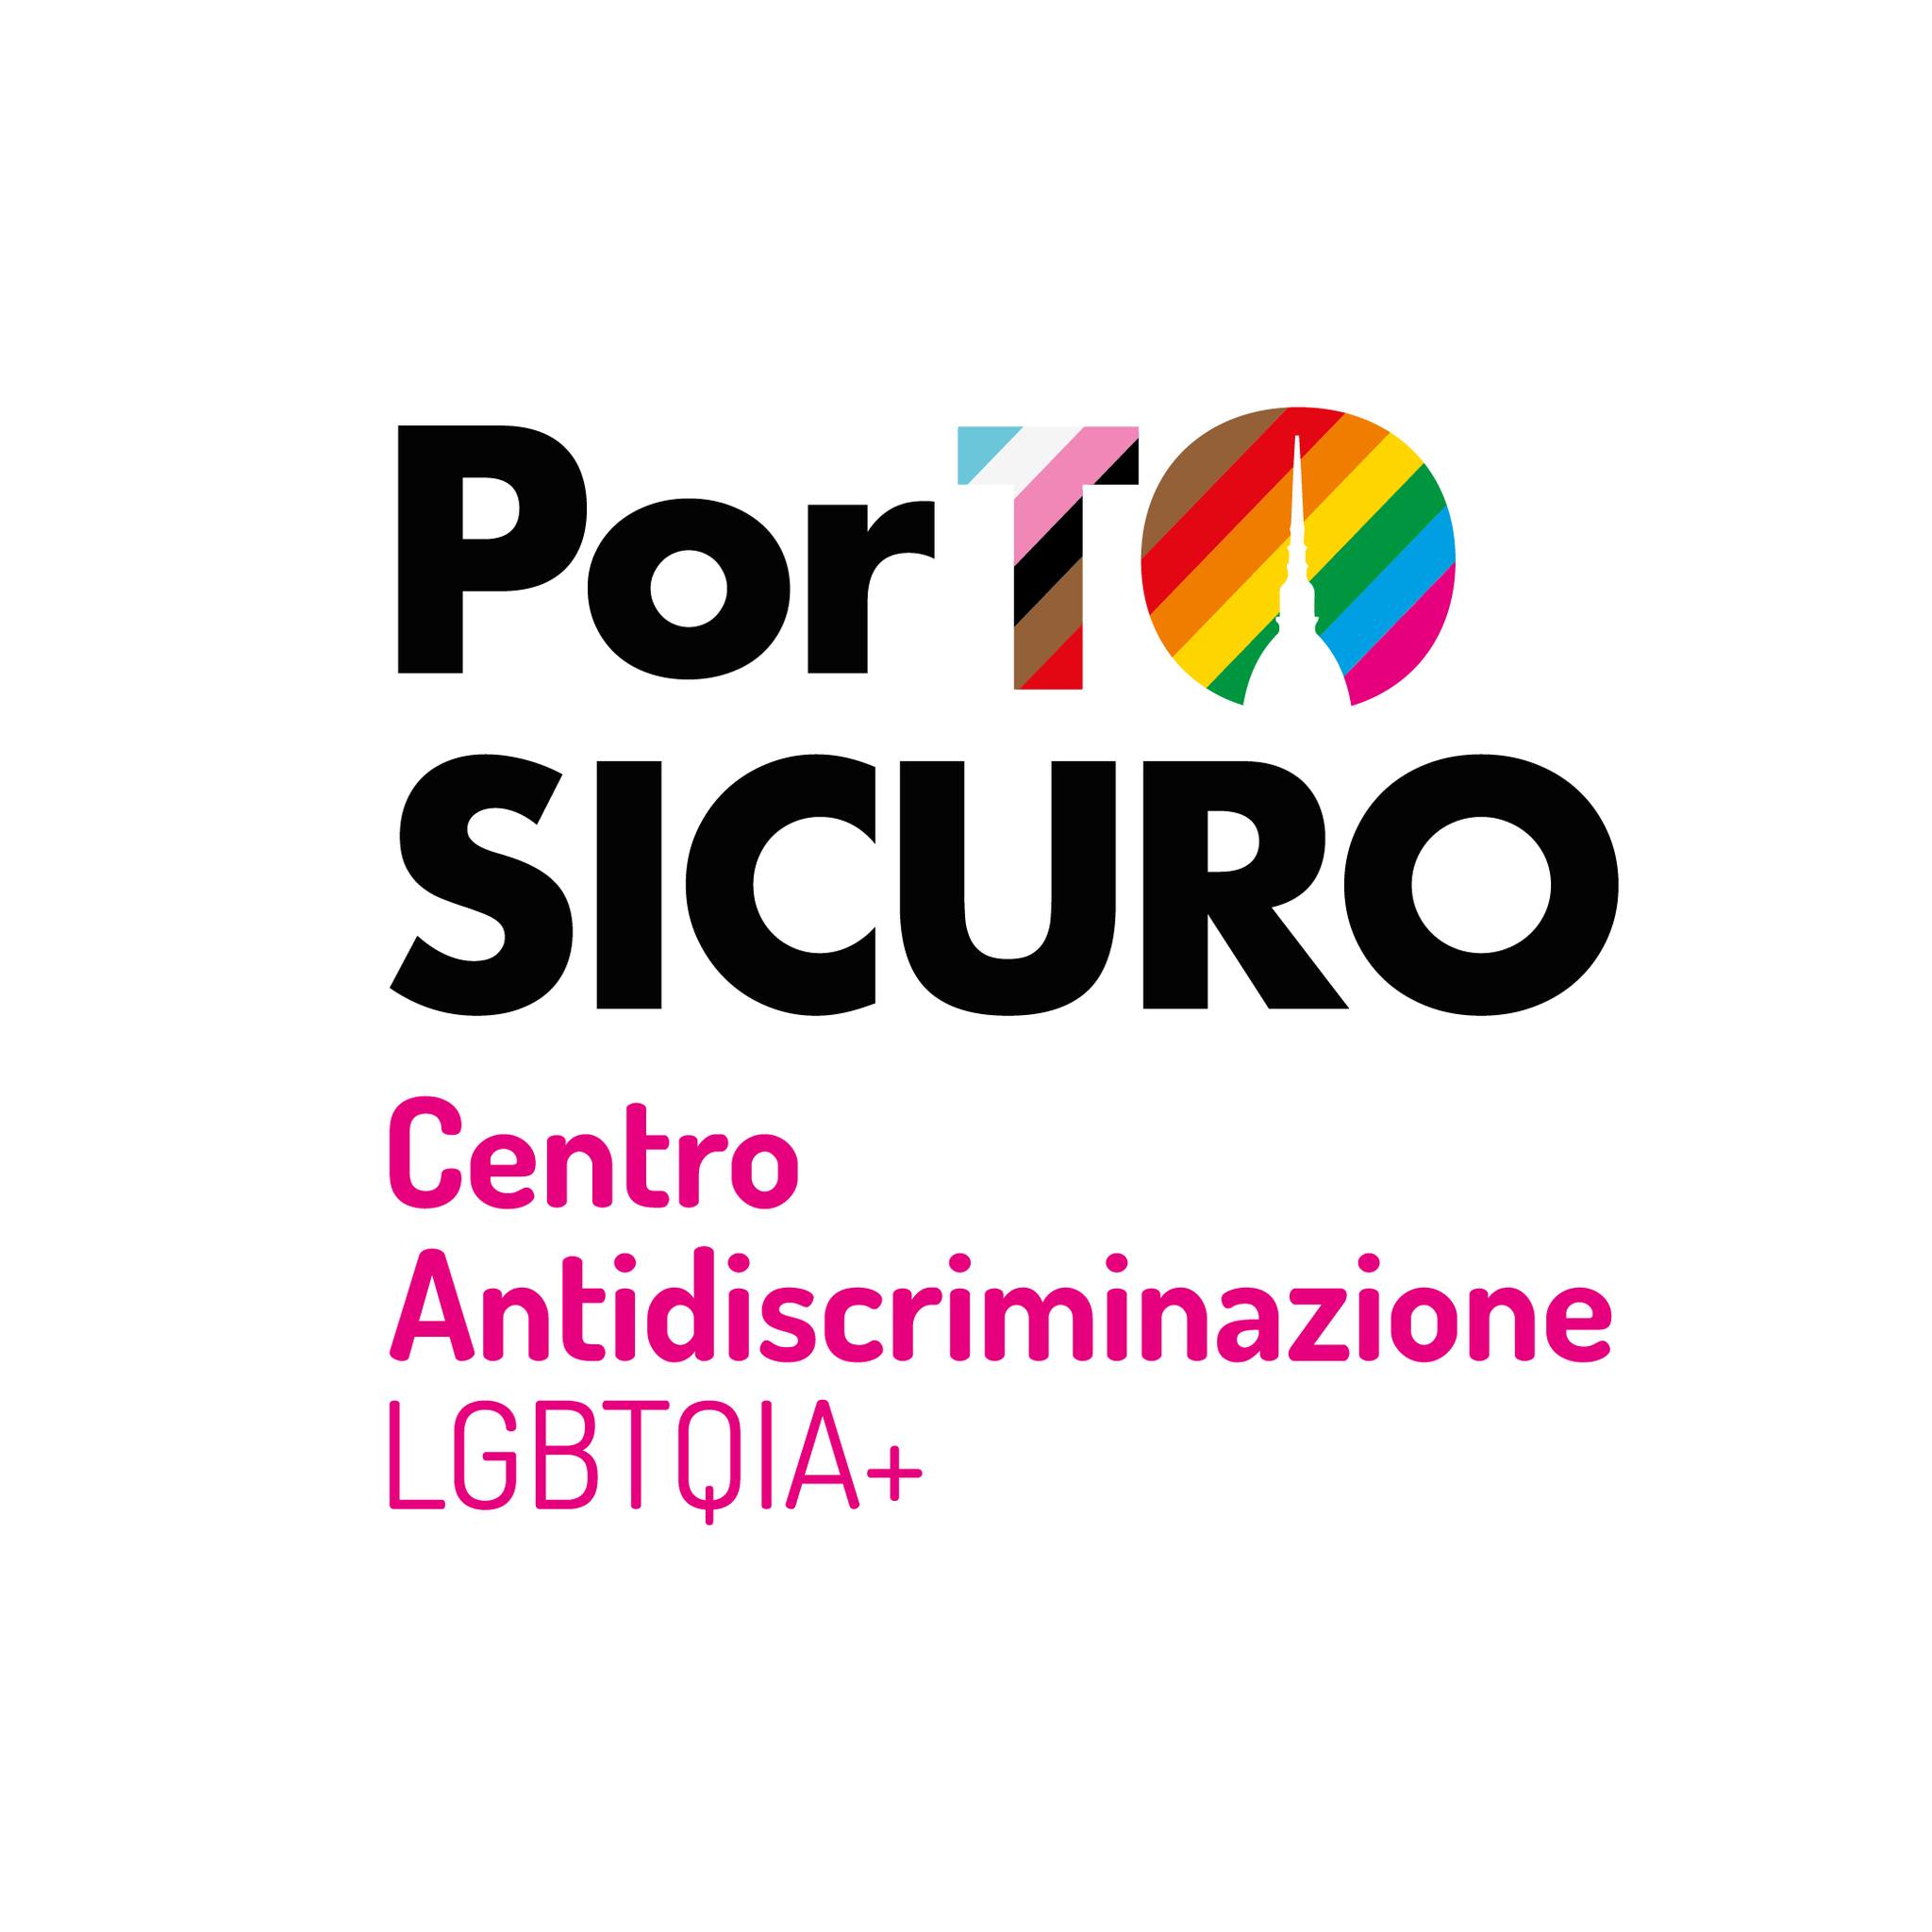 PorTo Sicuro centro antidiscriminazioni LGBTQIA+